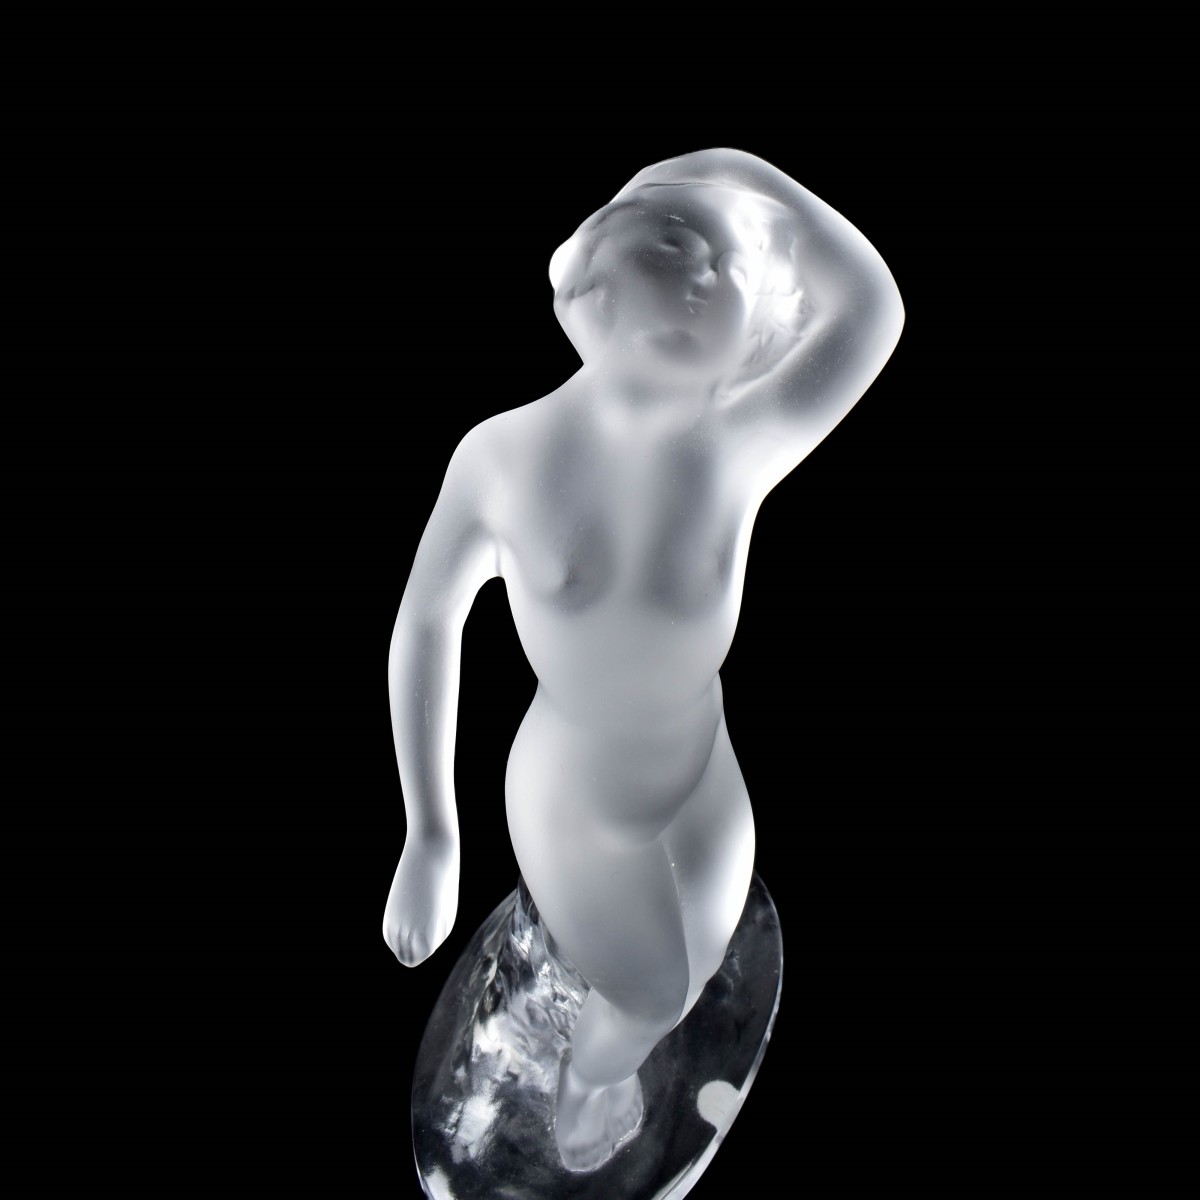 Lalique "Danseuse" Crystal Figurine